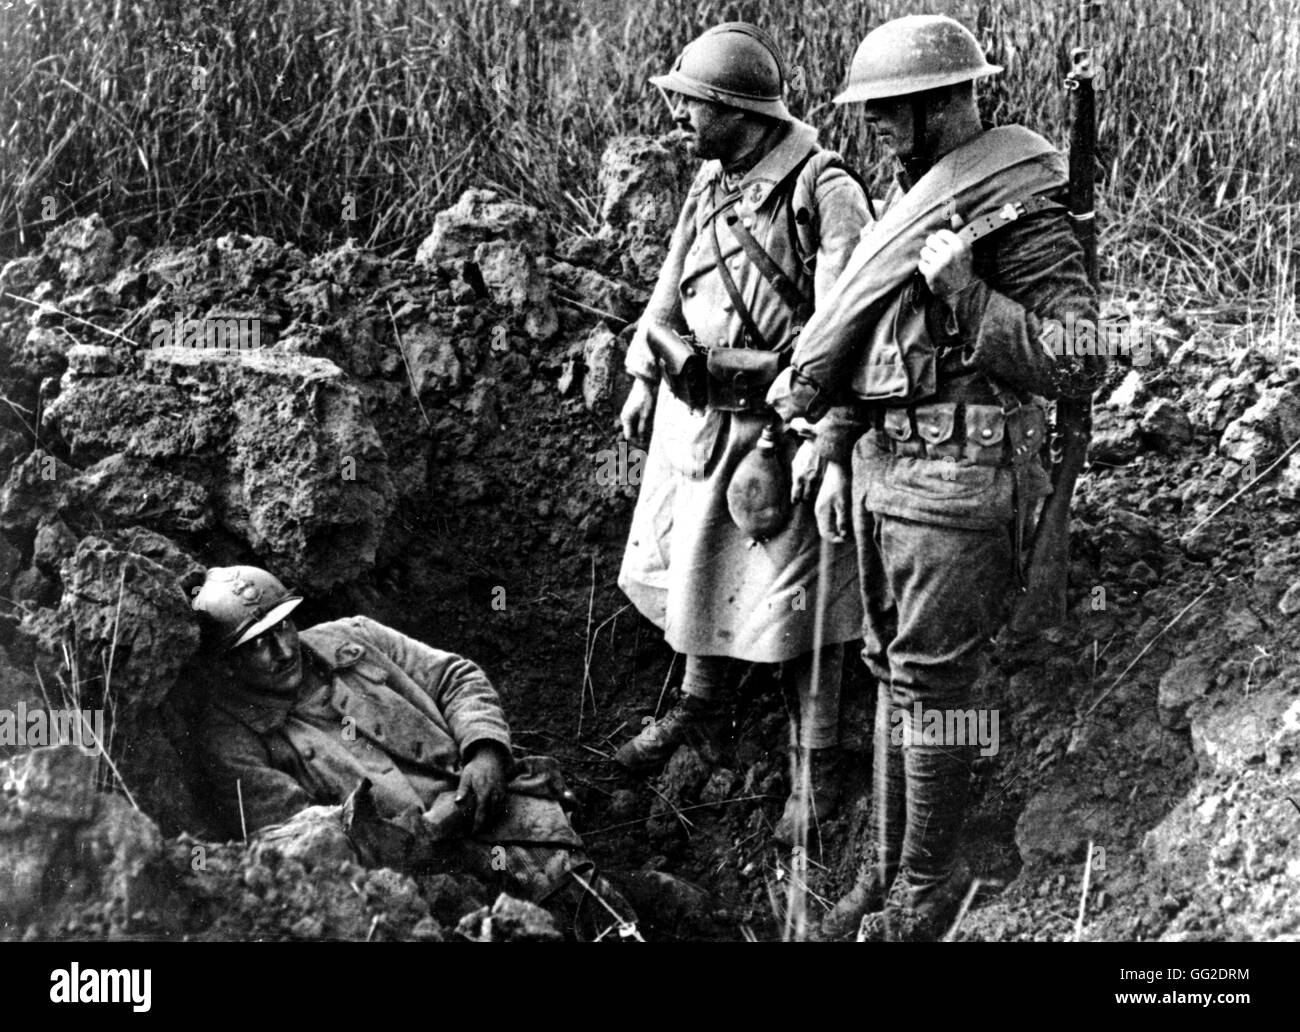 Cerca De Beaurepaire, soldado francés acostado en un agujero hecho por una concha y ser rescatados por los franceses y los soldados americanos 1917 Francia - La I Guerra Mundial Foto de stock